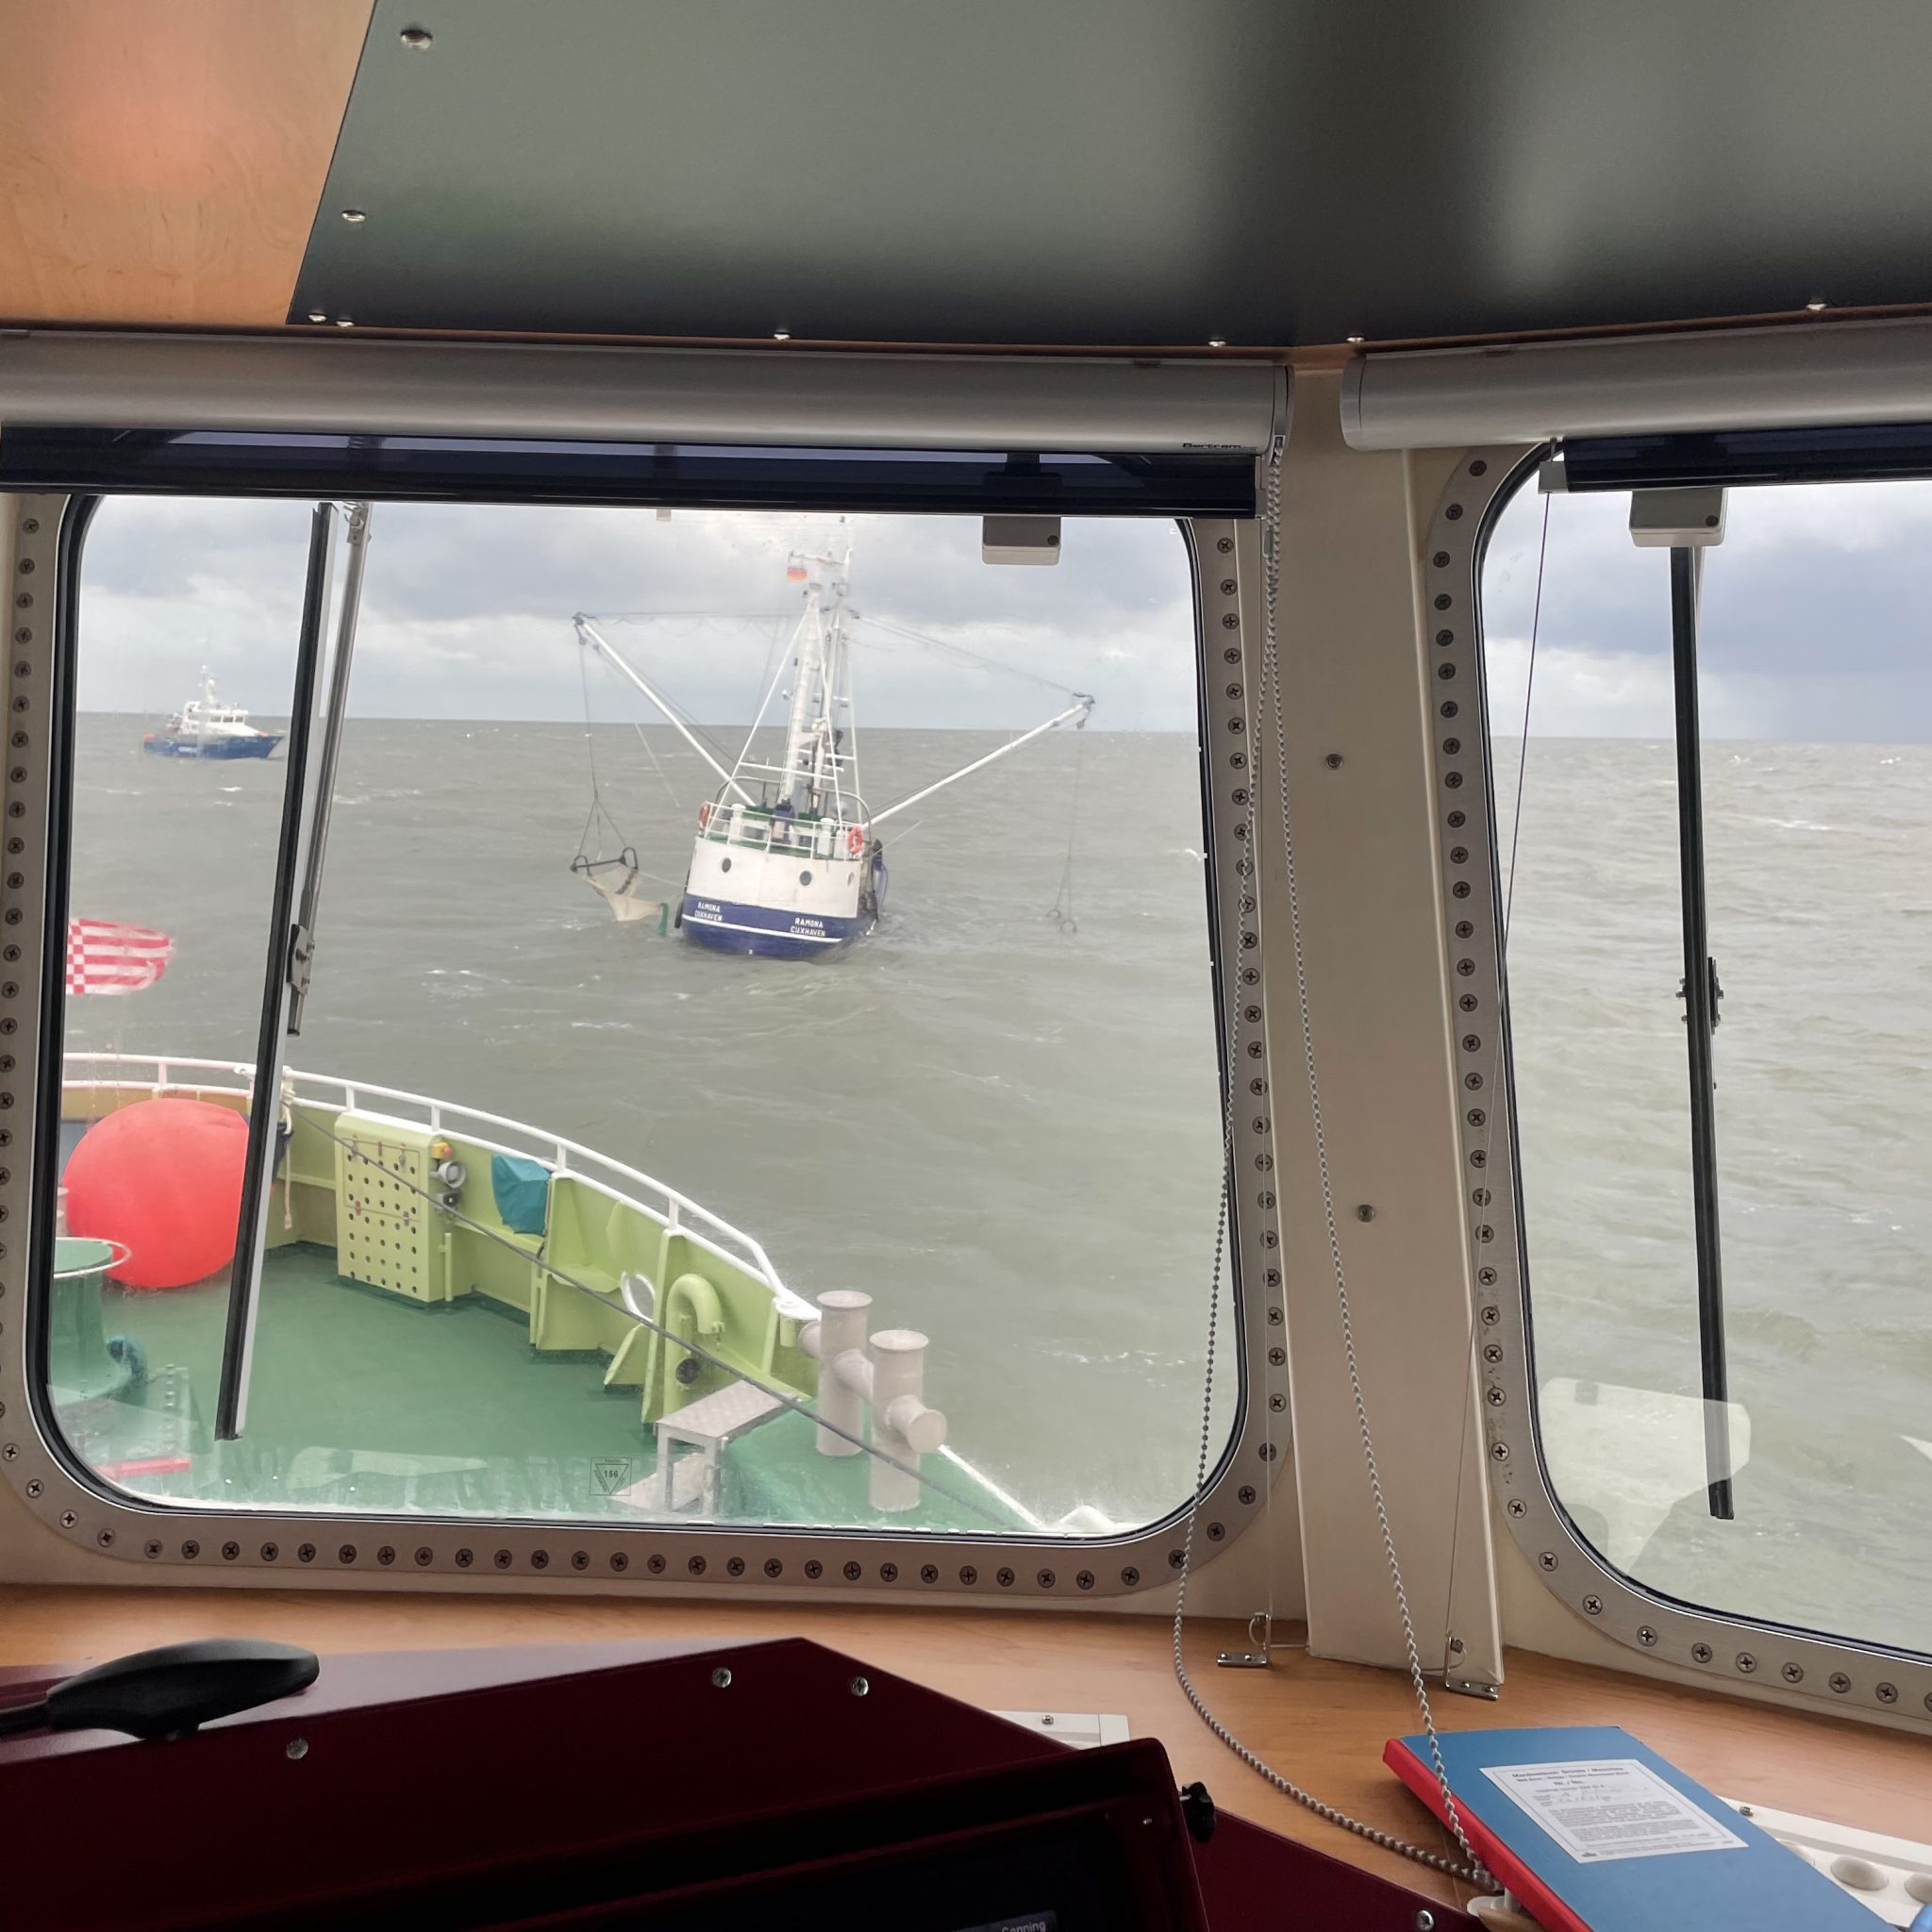 Kort voor het zinken werd de kotter gefotografeerd vanaf de brug van de reddinboot Anneliese Kramer van het DGzRS station Cuxhaven. Op de achtergrond de reddingboot Sylt. (Foto Die Seenotretter-DGzRS)